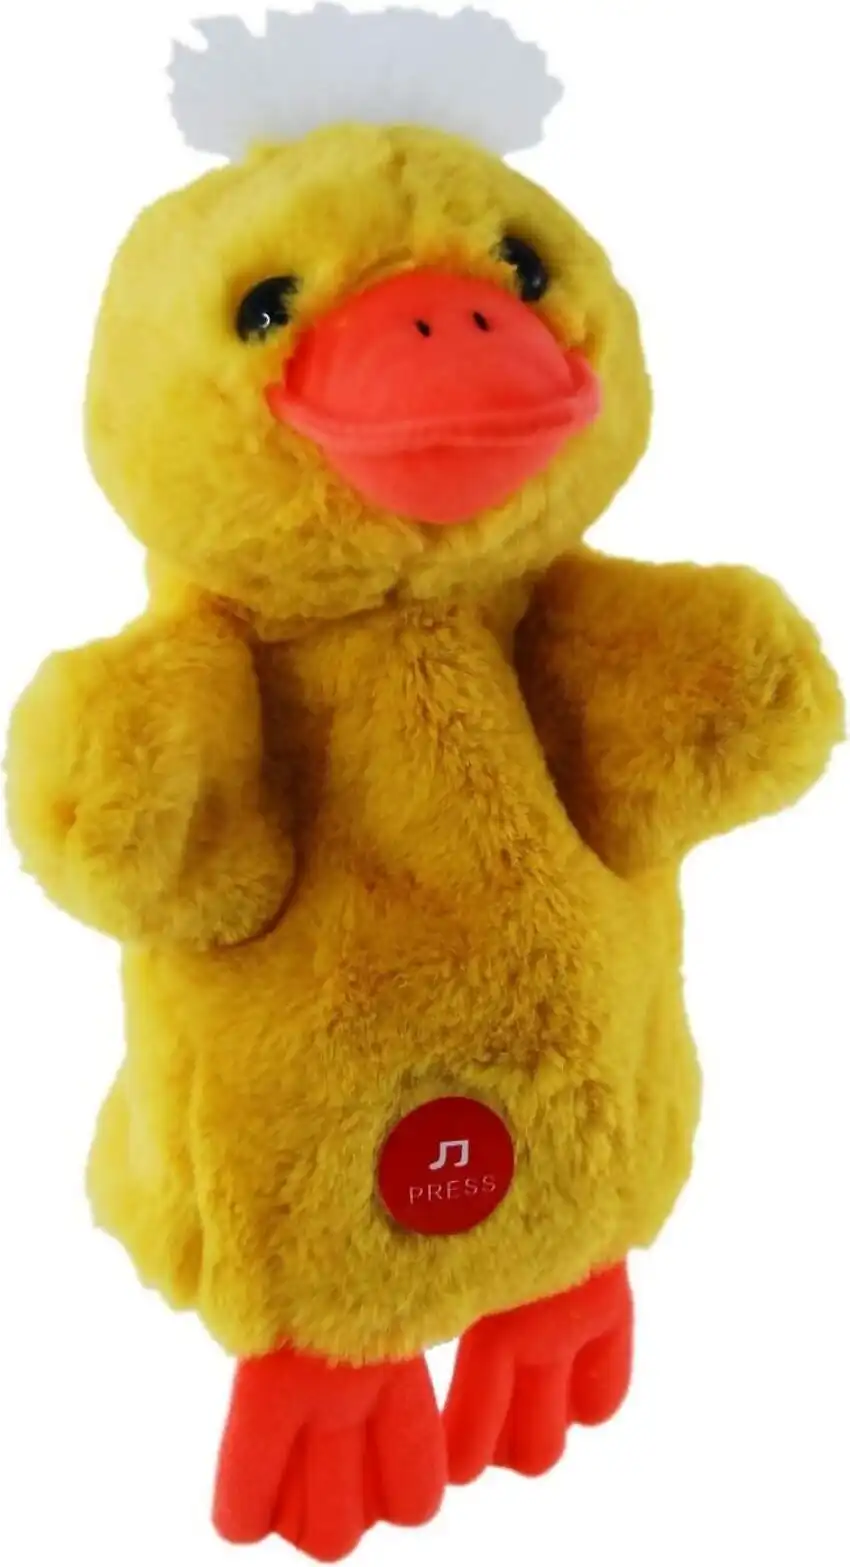 Elka Australia - Hand Puppet Duck With Sound